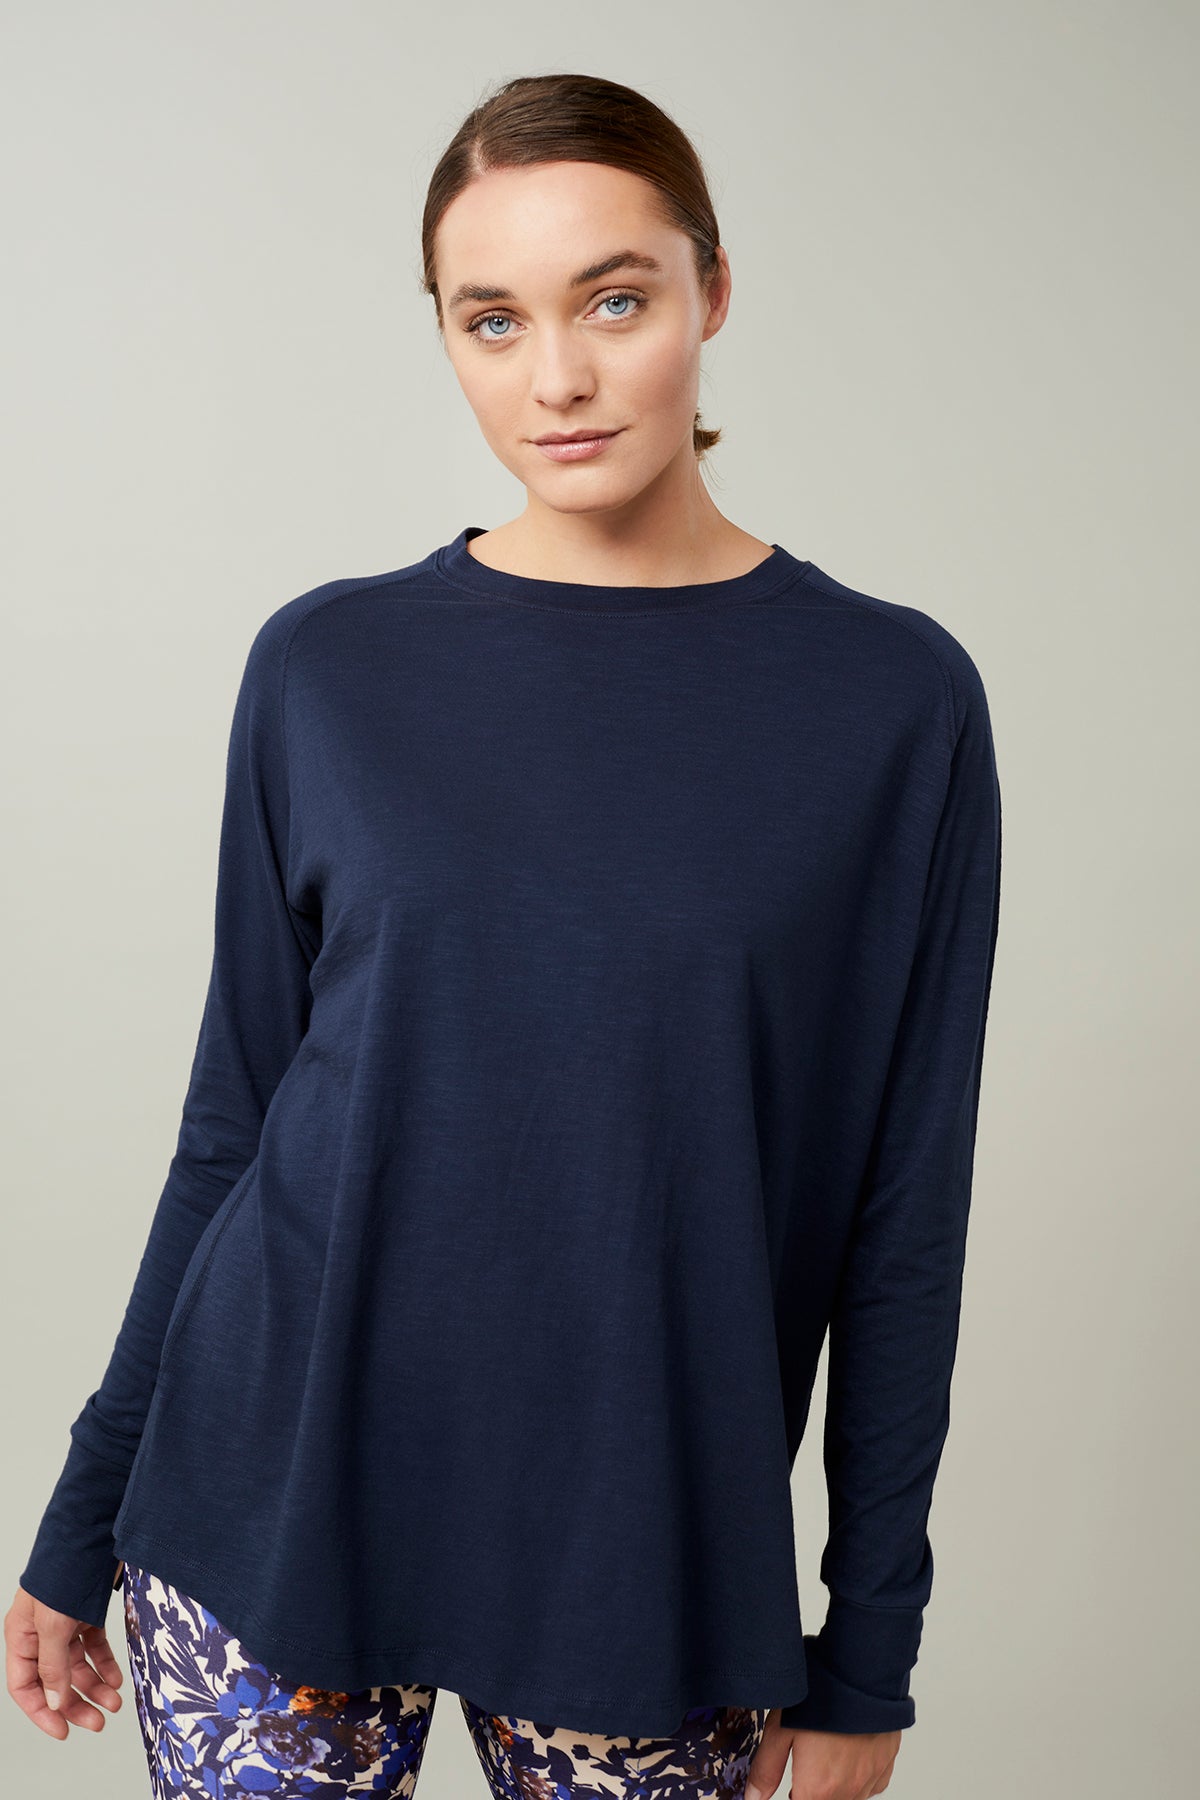 Mandala Yoga Shirt Blau Front - Active Long Sleeve